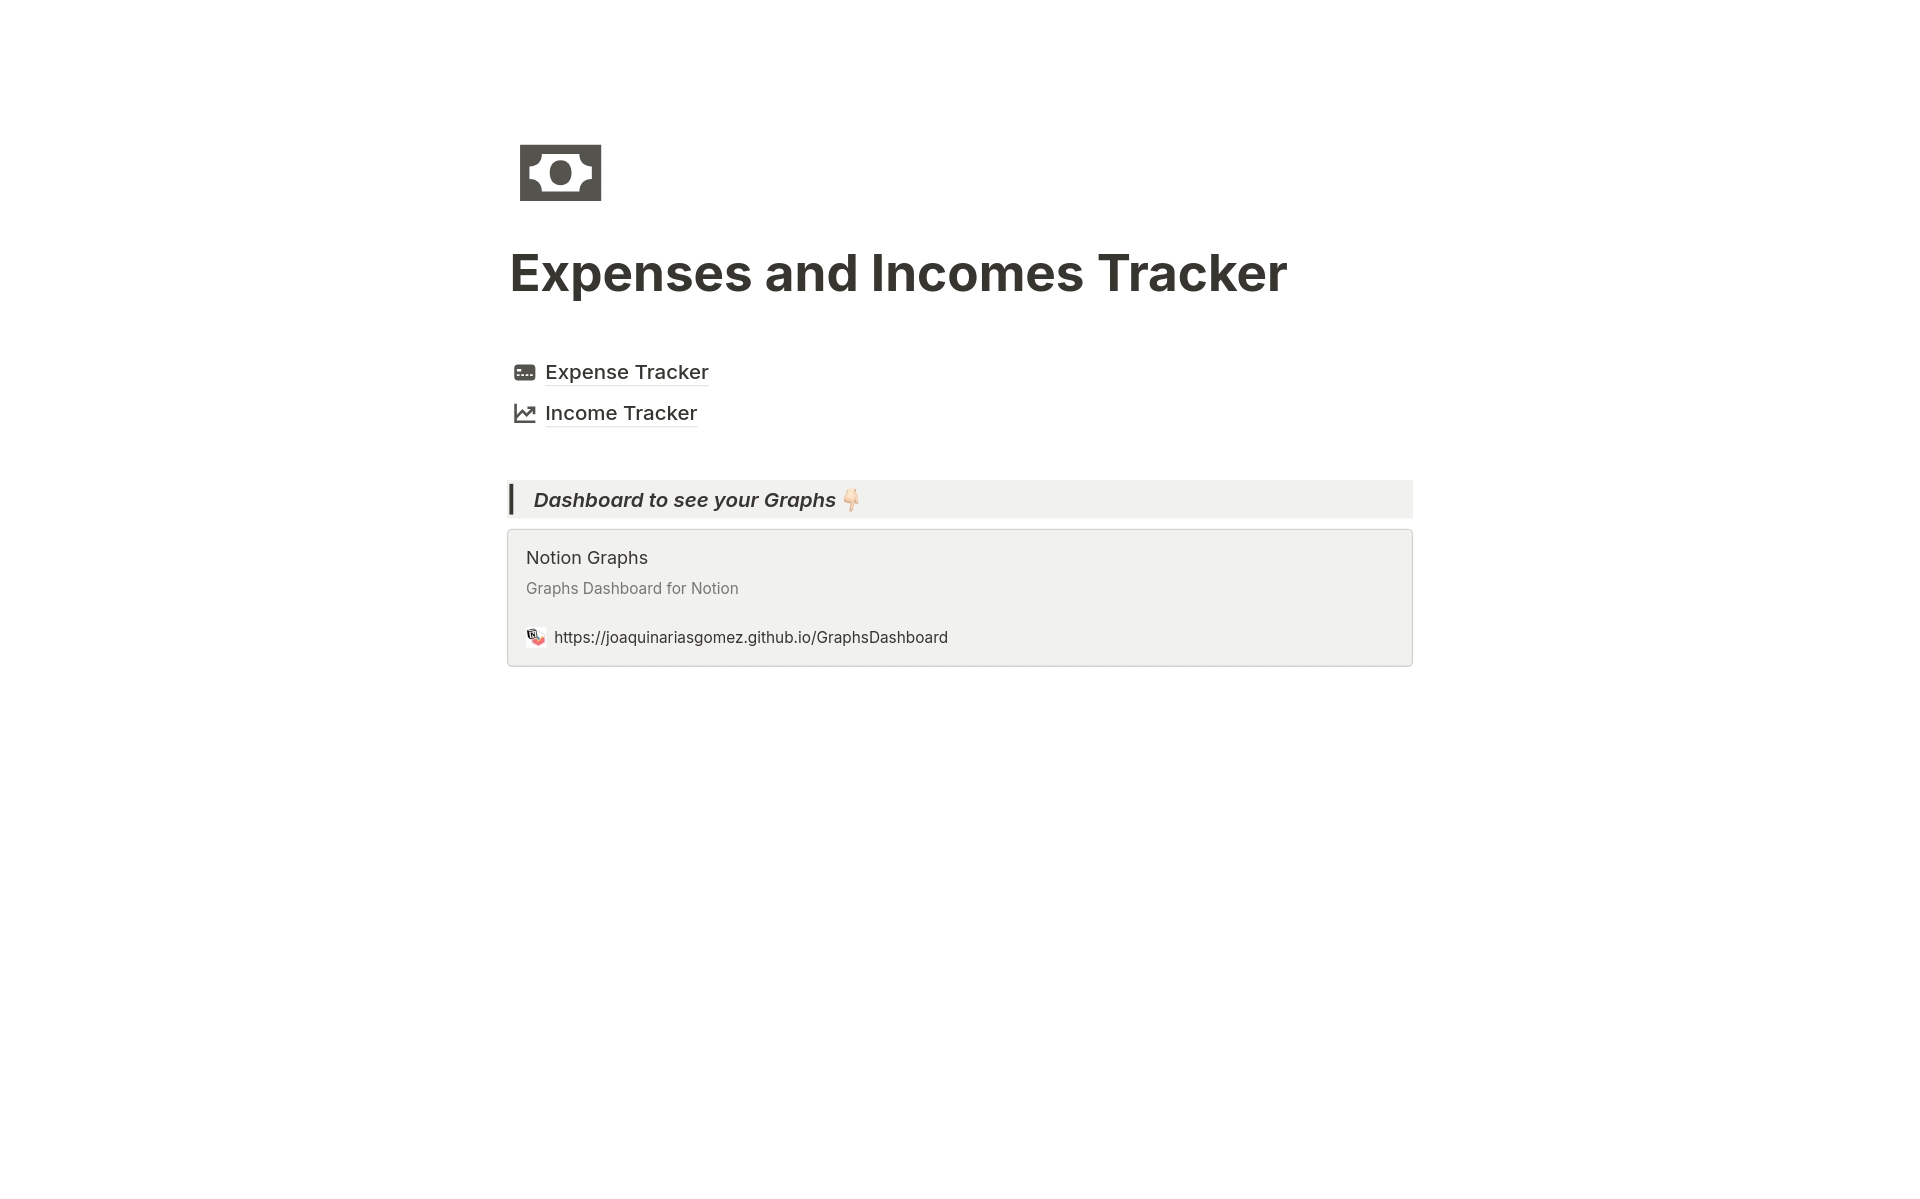 Uma prévia do modelo para Expenses and Incomes Tracker